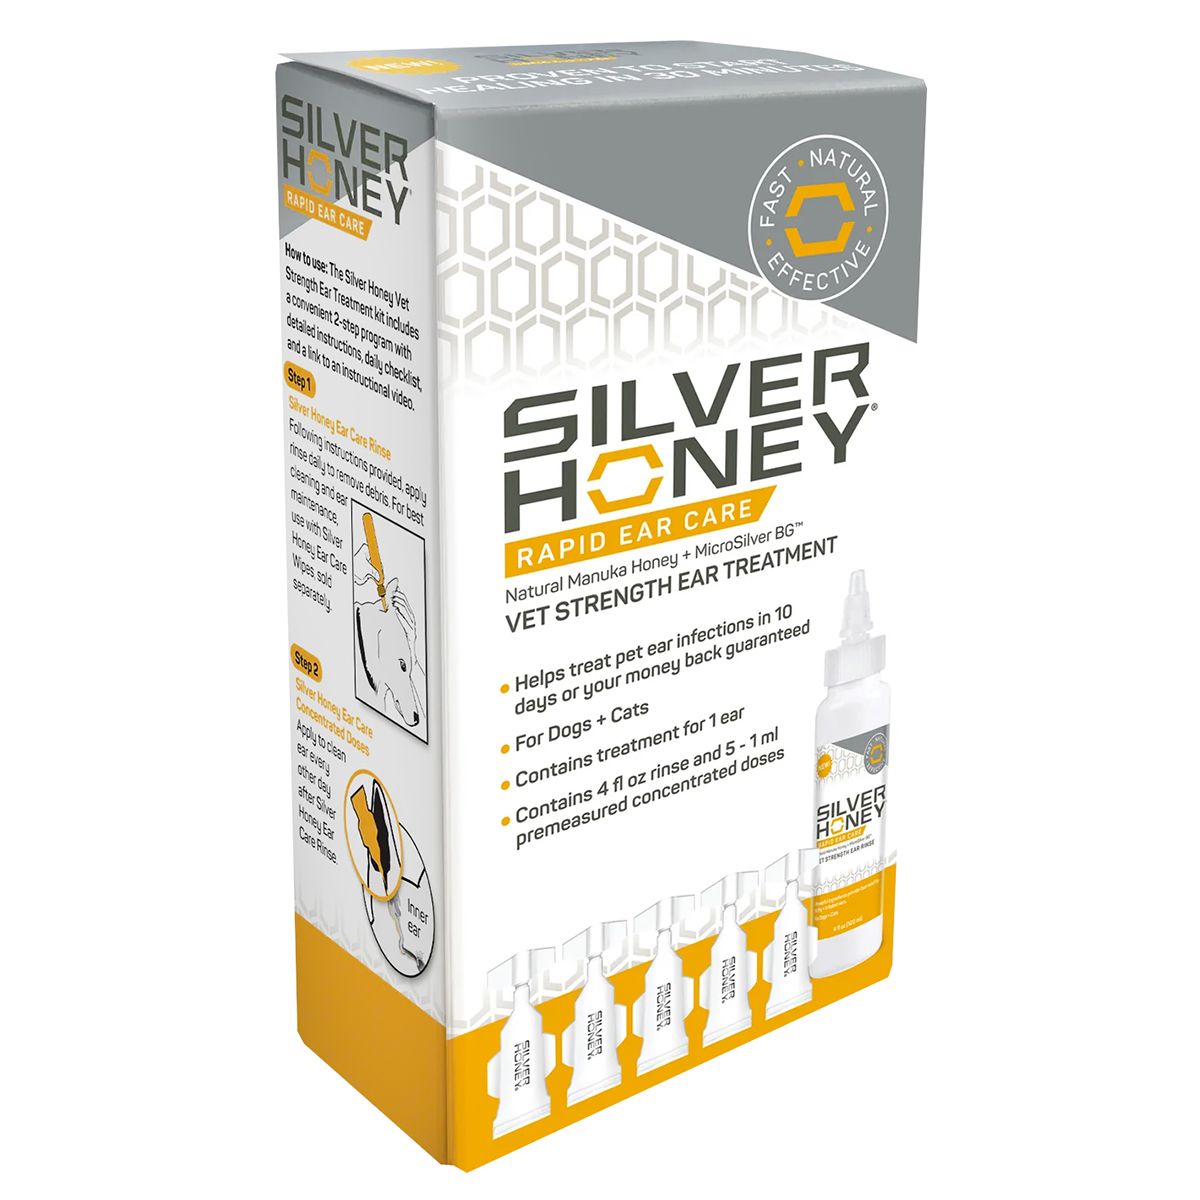 Silver Honey Rapid Ear Care Vet Strength Ear Treatment 4 oz.